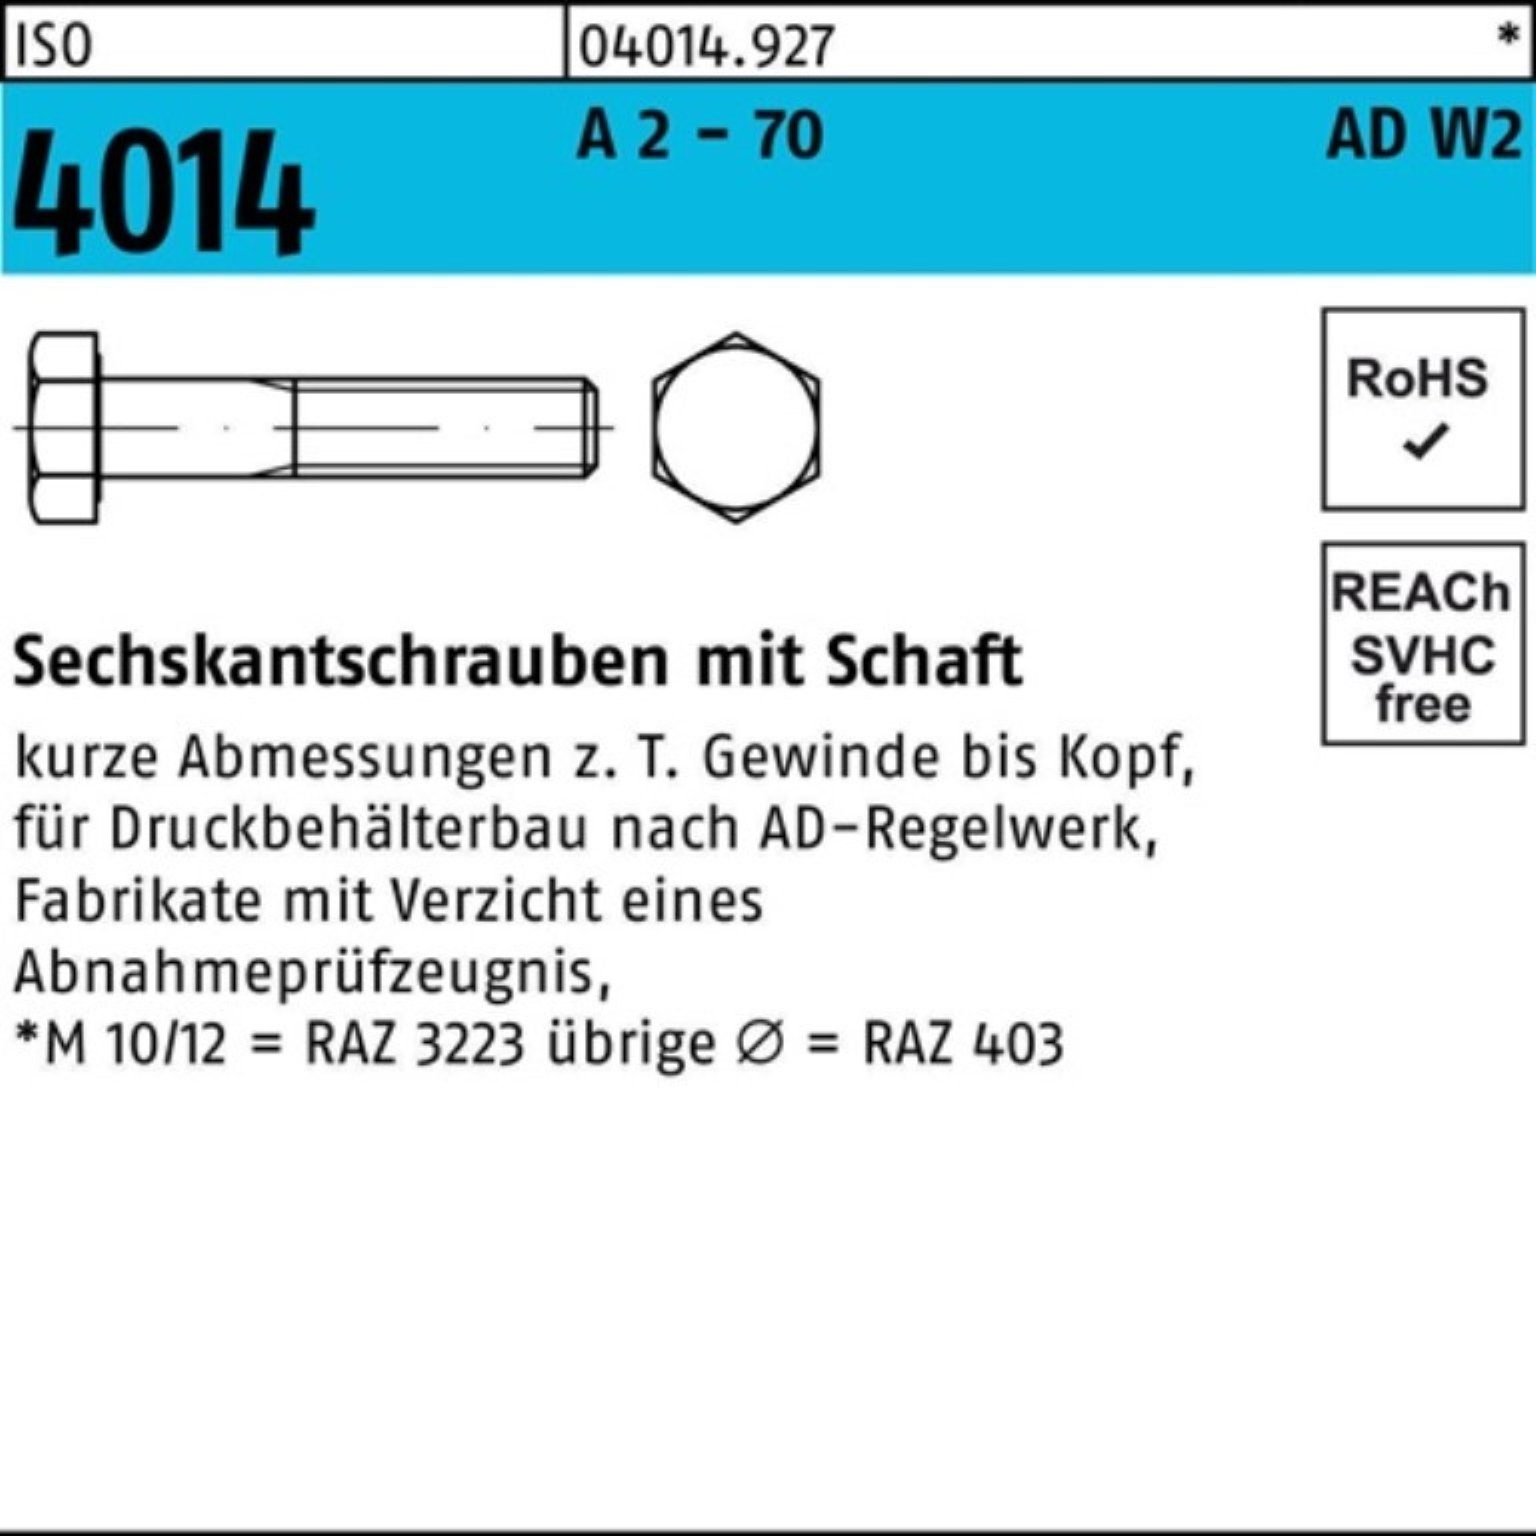 Bufab Sechskantschraube 100er Pack Sechskantschraube - 70 85 AD-W2 25 A 2 ISO M12x Schaft 4014